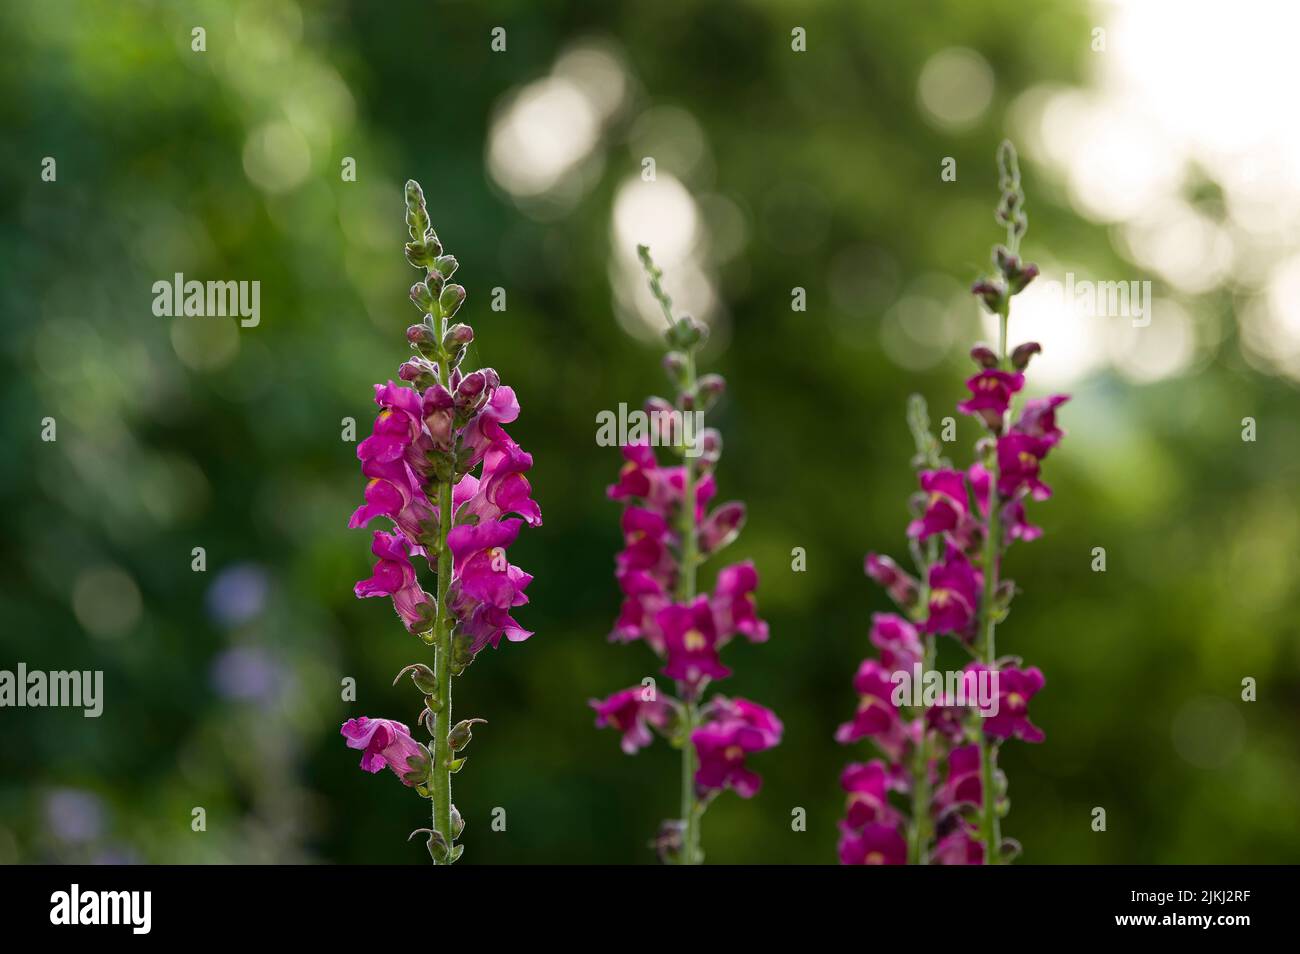 Flores rosadas de snapdragon (Antirrhinum), Alemania Foto de stock